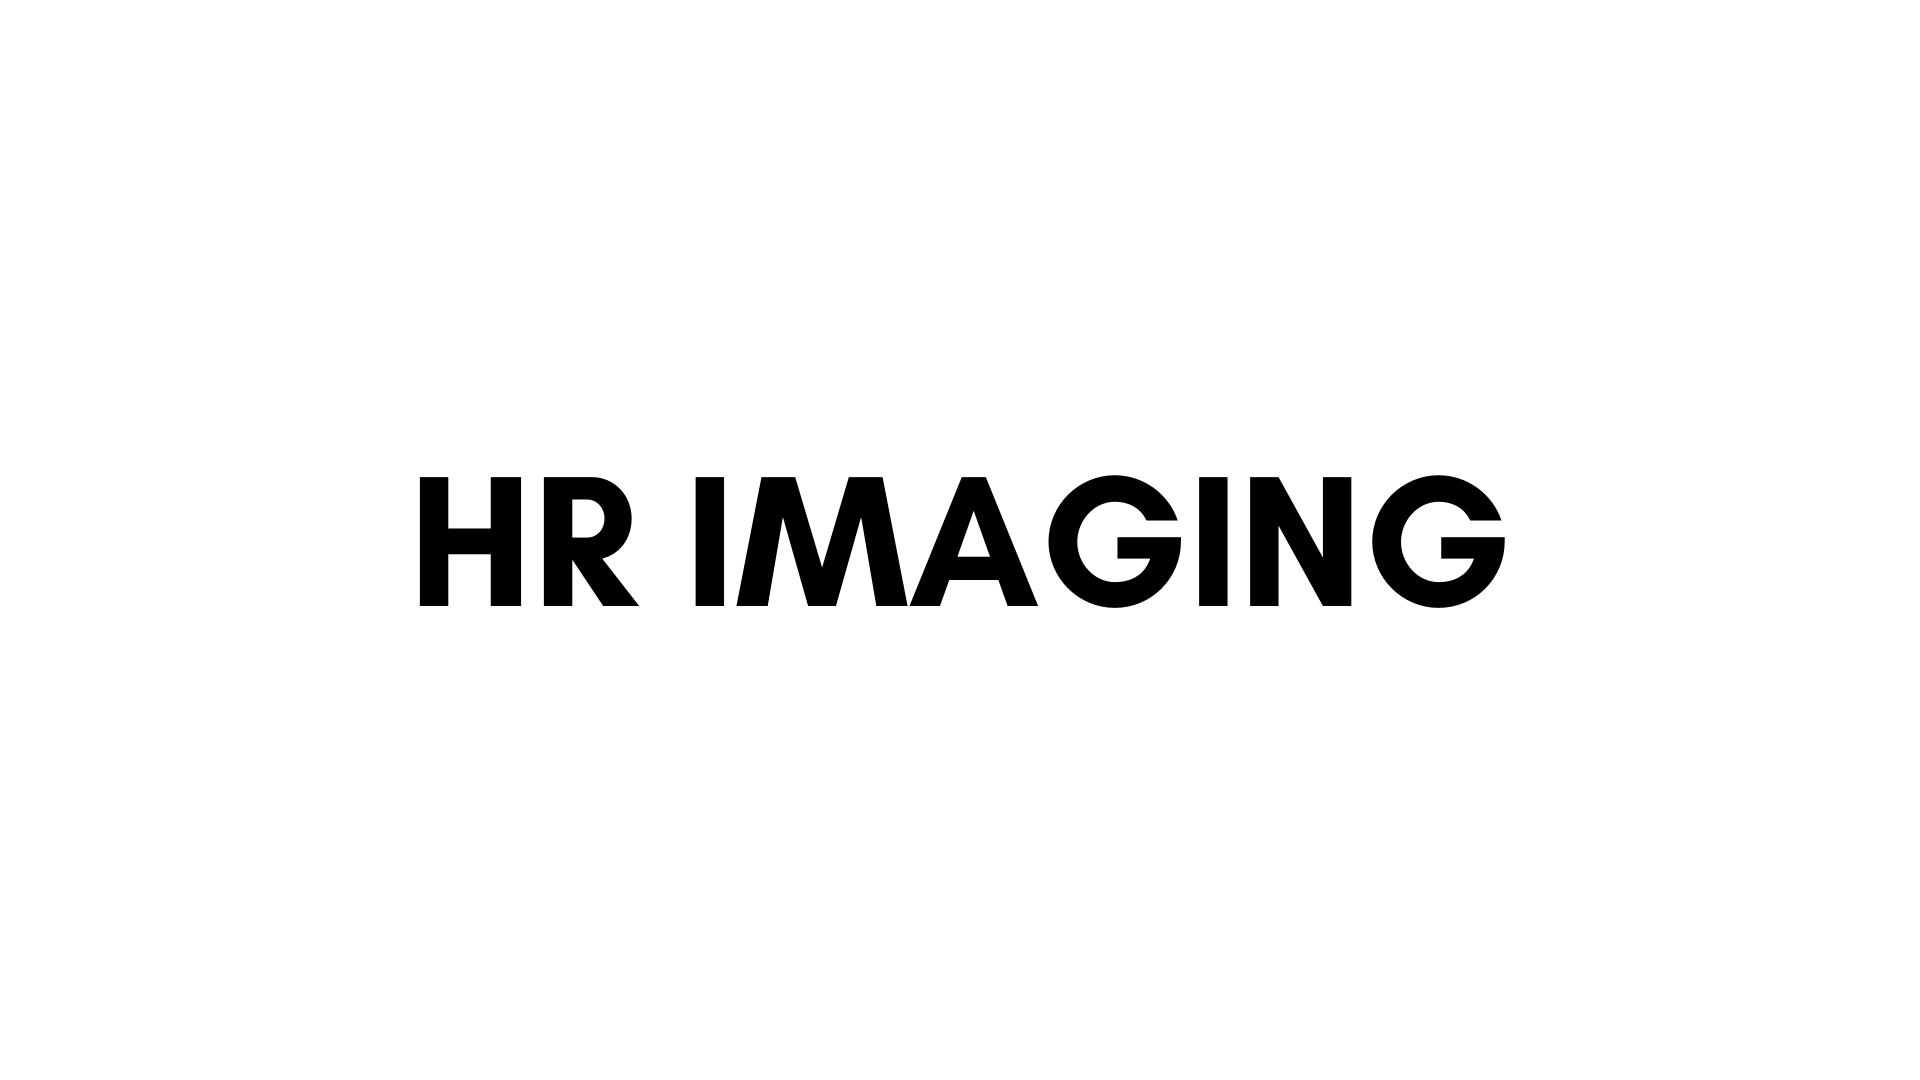 HR IMAGING